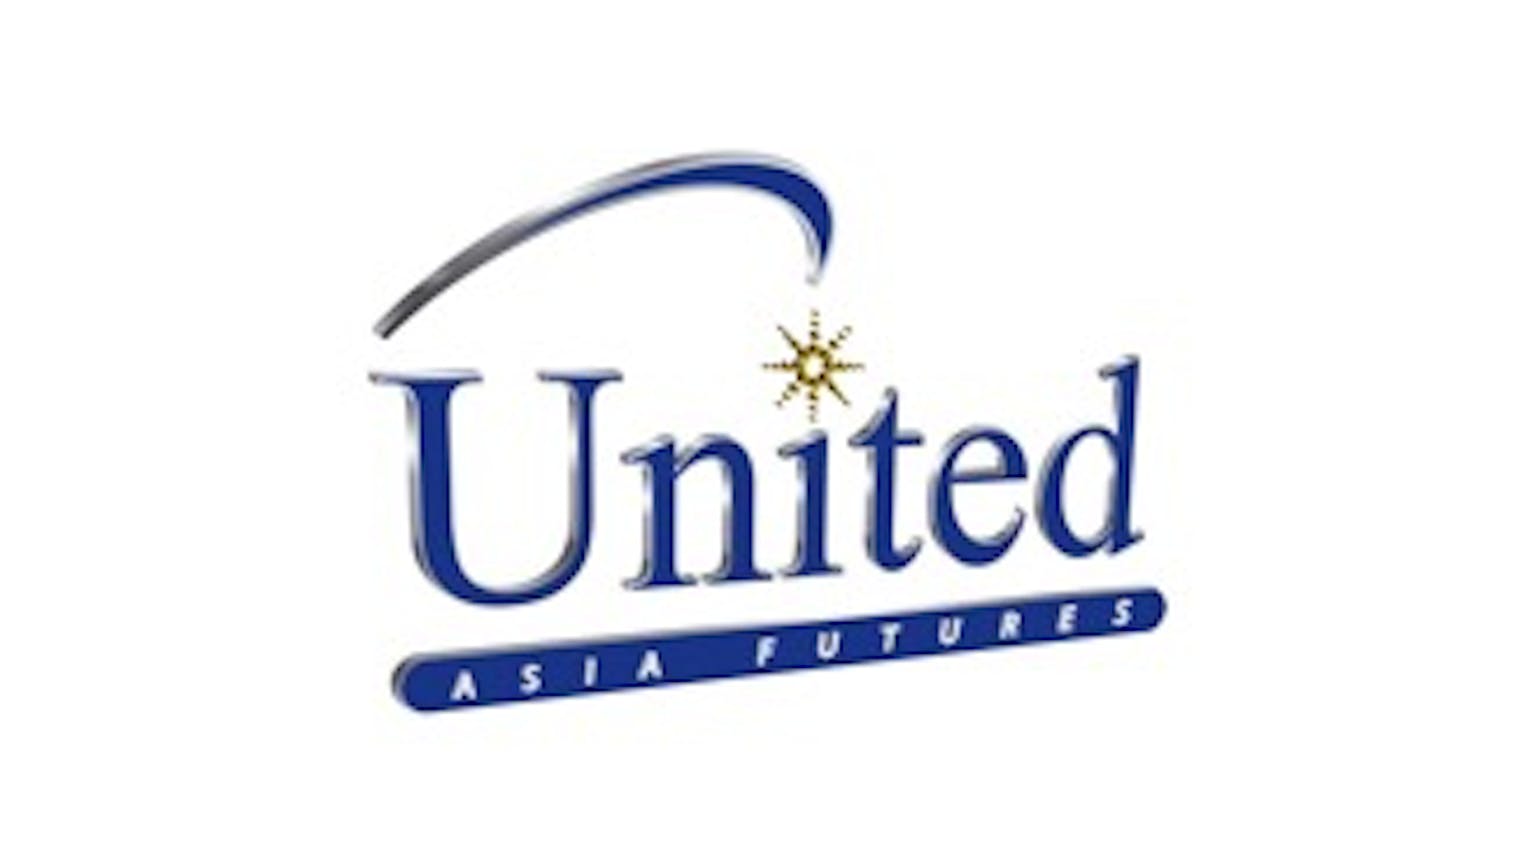 United Asia Futures